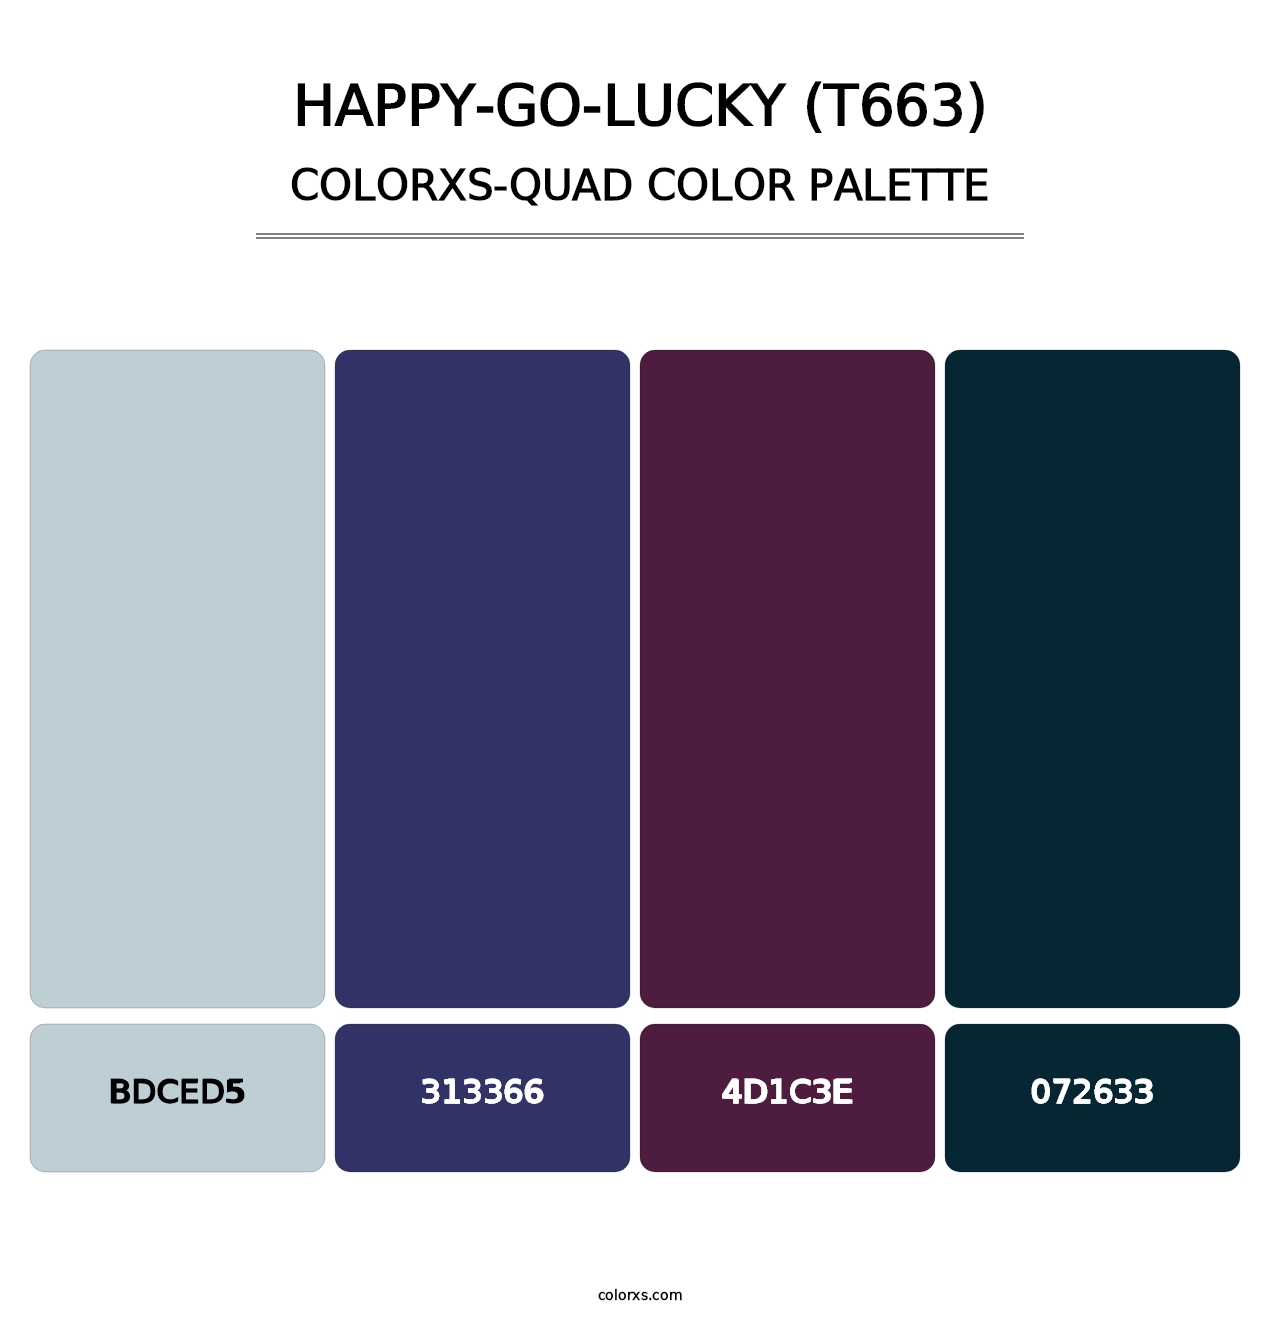 Happy-Go-Lucky (T663) - Colorxs Quad Palette